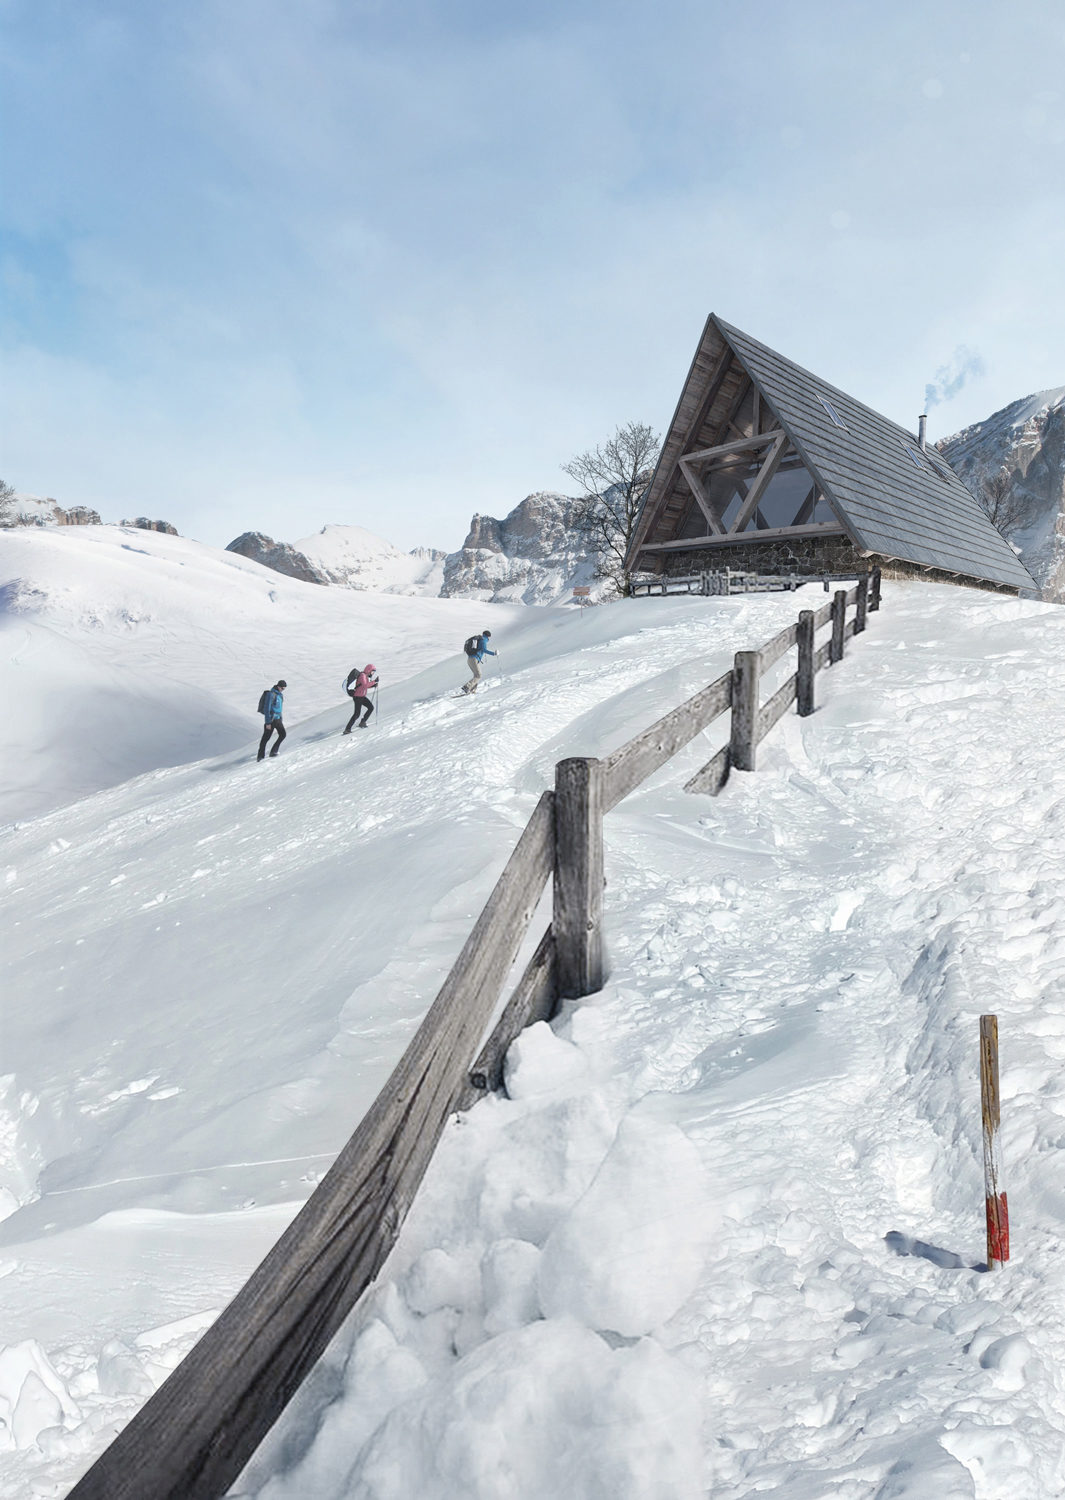 Mountain chalet in Cortina – Giovanni Cattani Architect, 2015